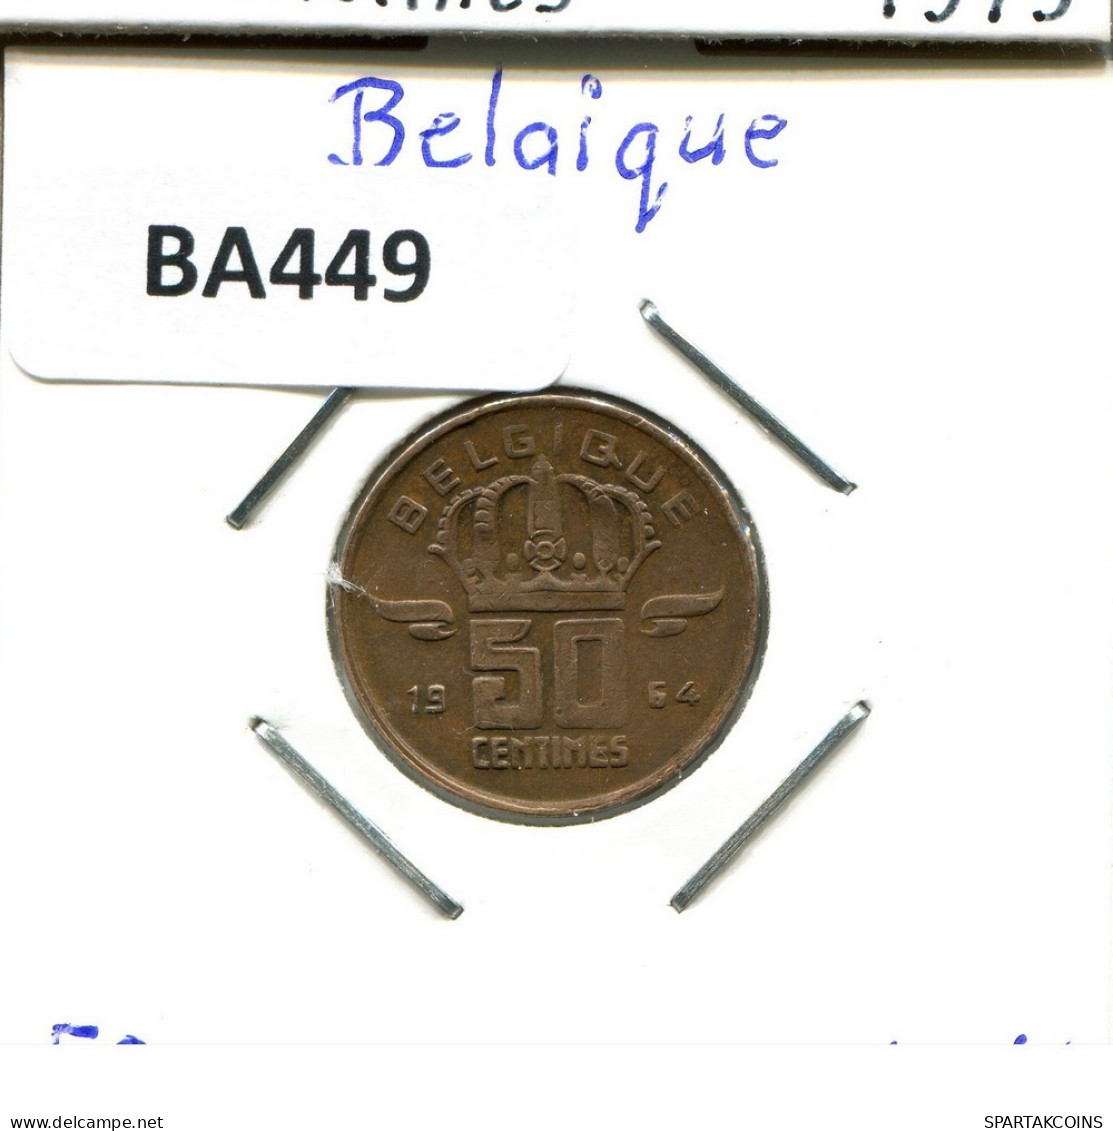 50 CENTIMES 1964 FRENCH Text BELGIQUE BELGIUM Pièce #BA449.F.A - 50 Cents